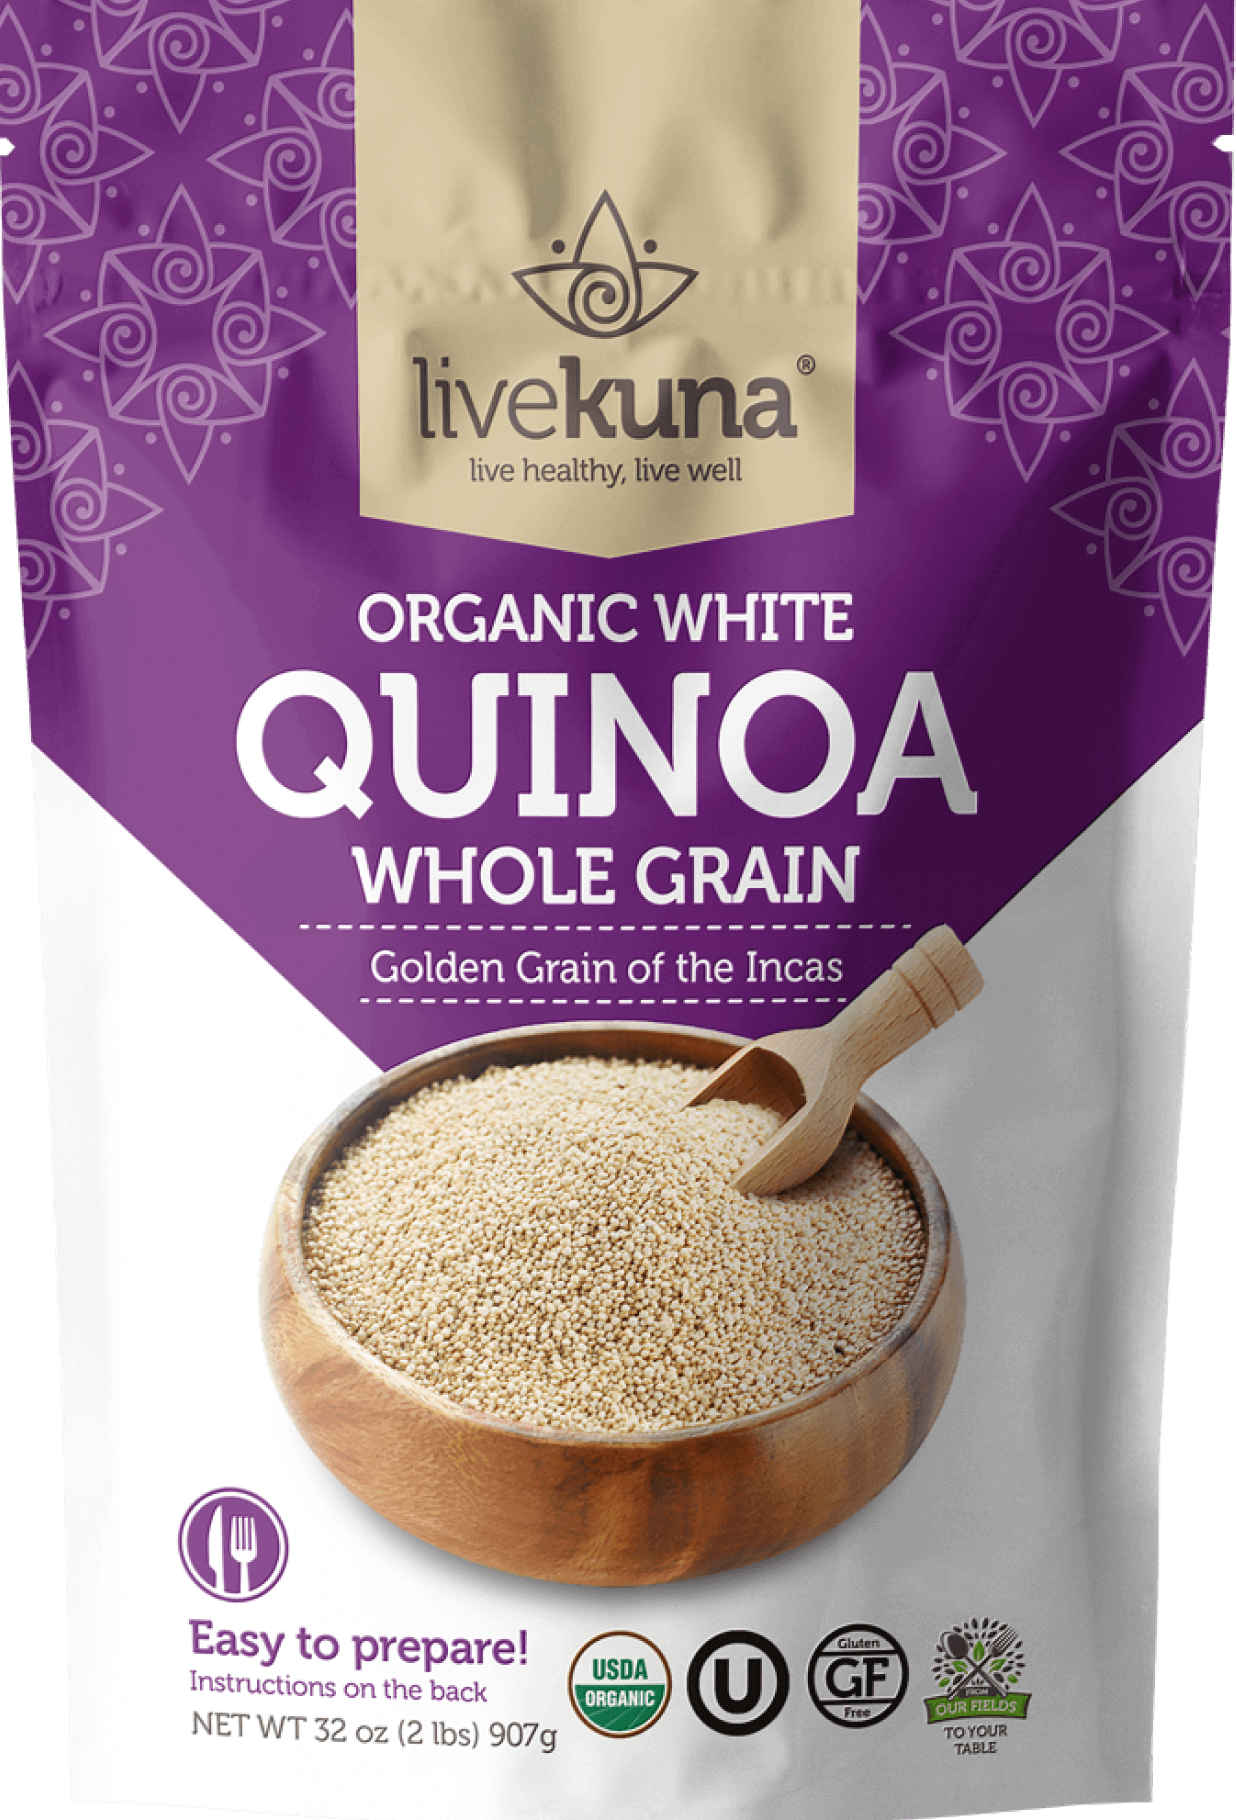 quinoa@2x-1 (1) (1)